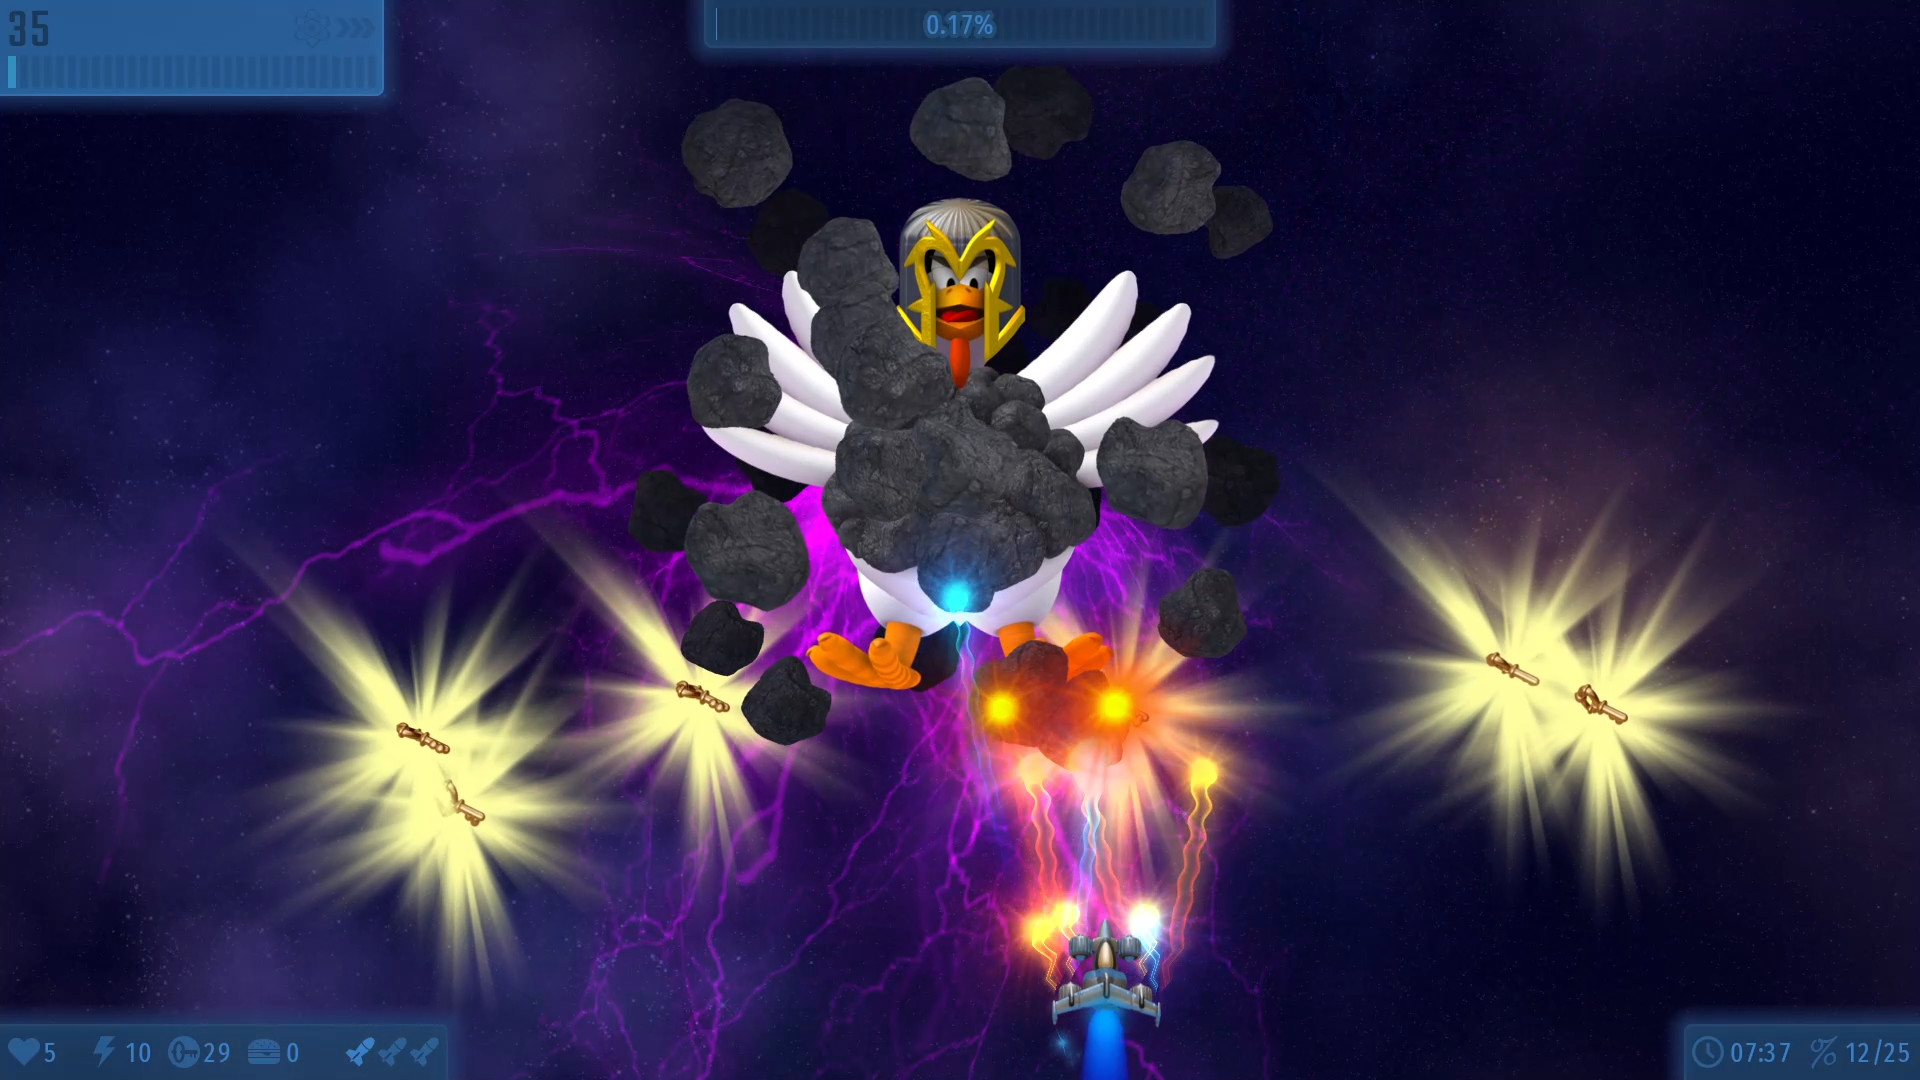 Chicken Invaders Universe on Steam